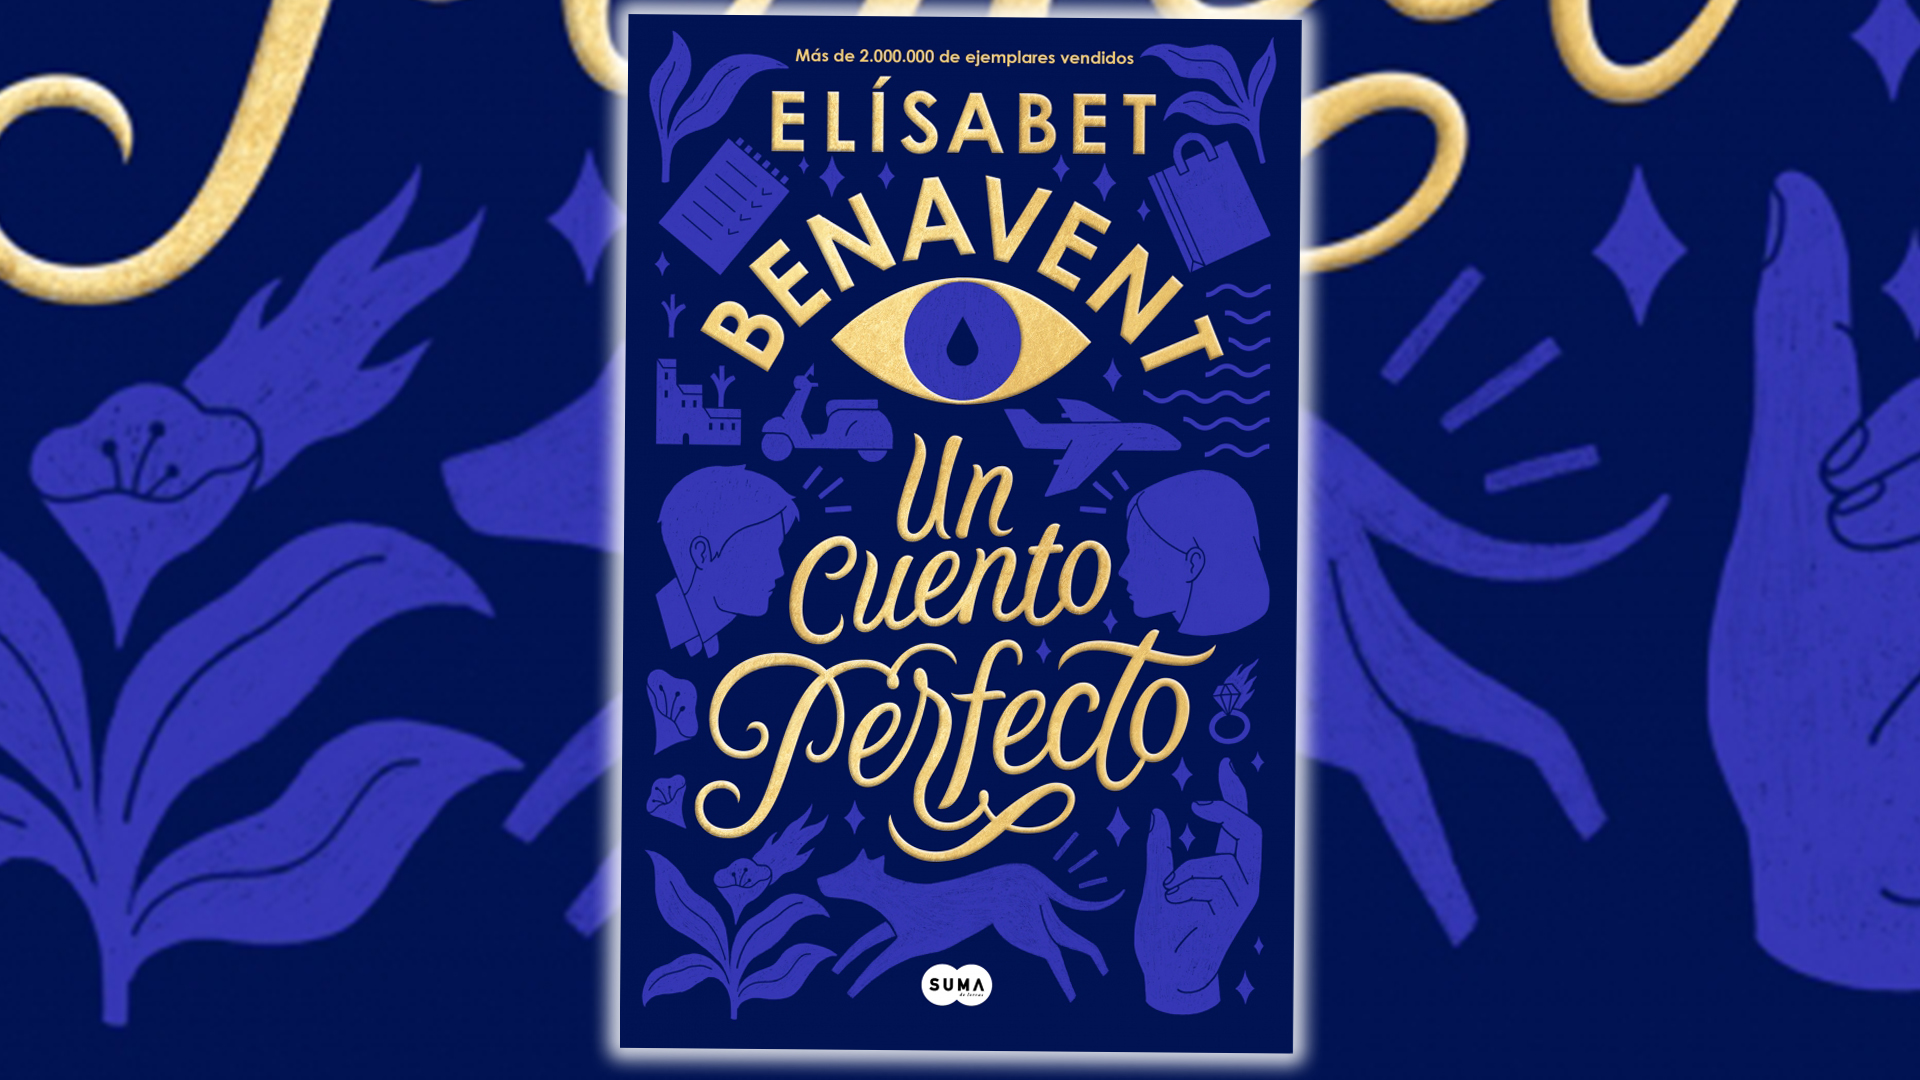 UN CUENTO PERFECTO (EDICION ESPECIAL), ELISABET BENAVENT, SUMA